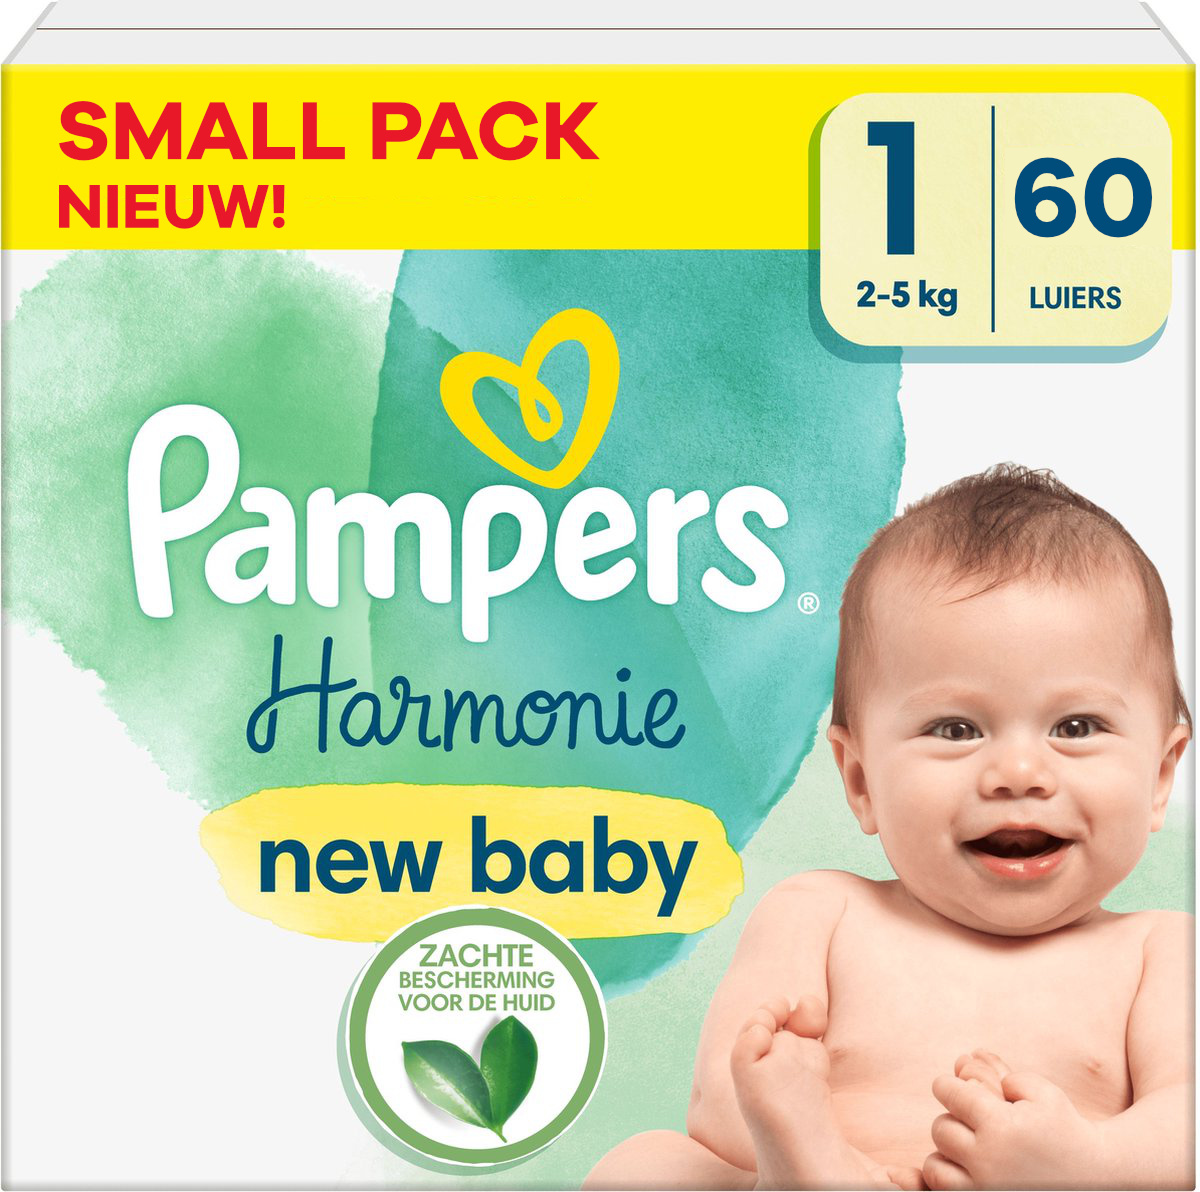 Luiers & voor uw kind - Babydrogist.nl -